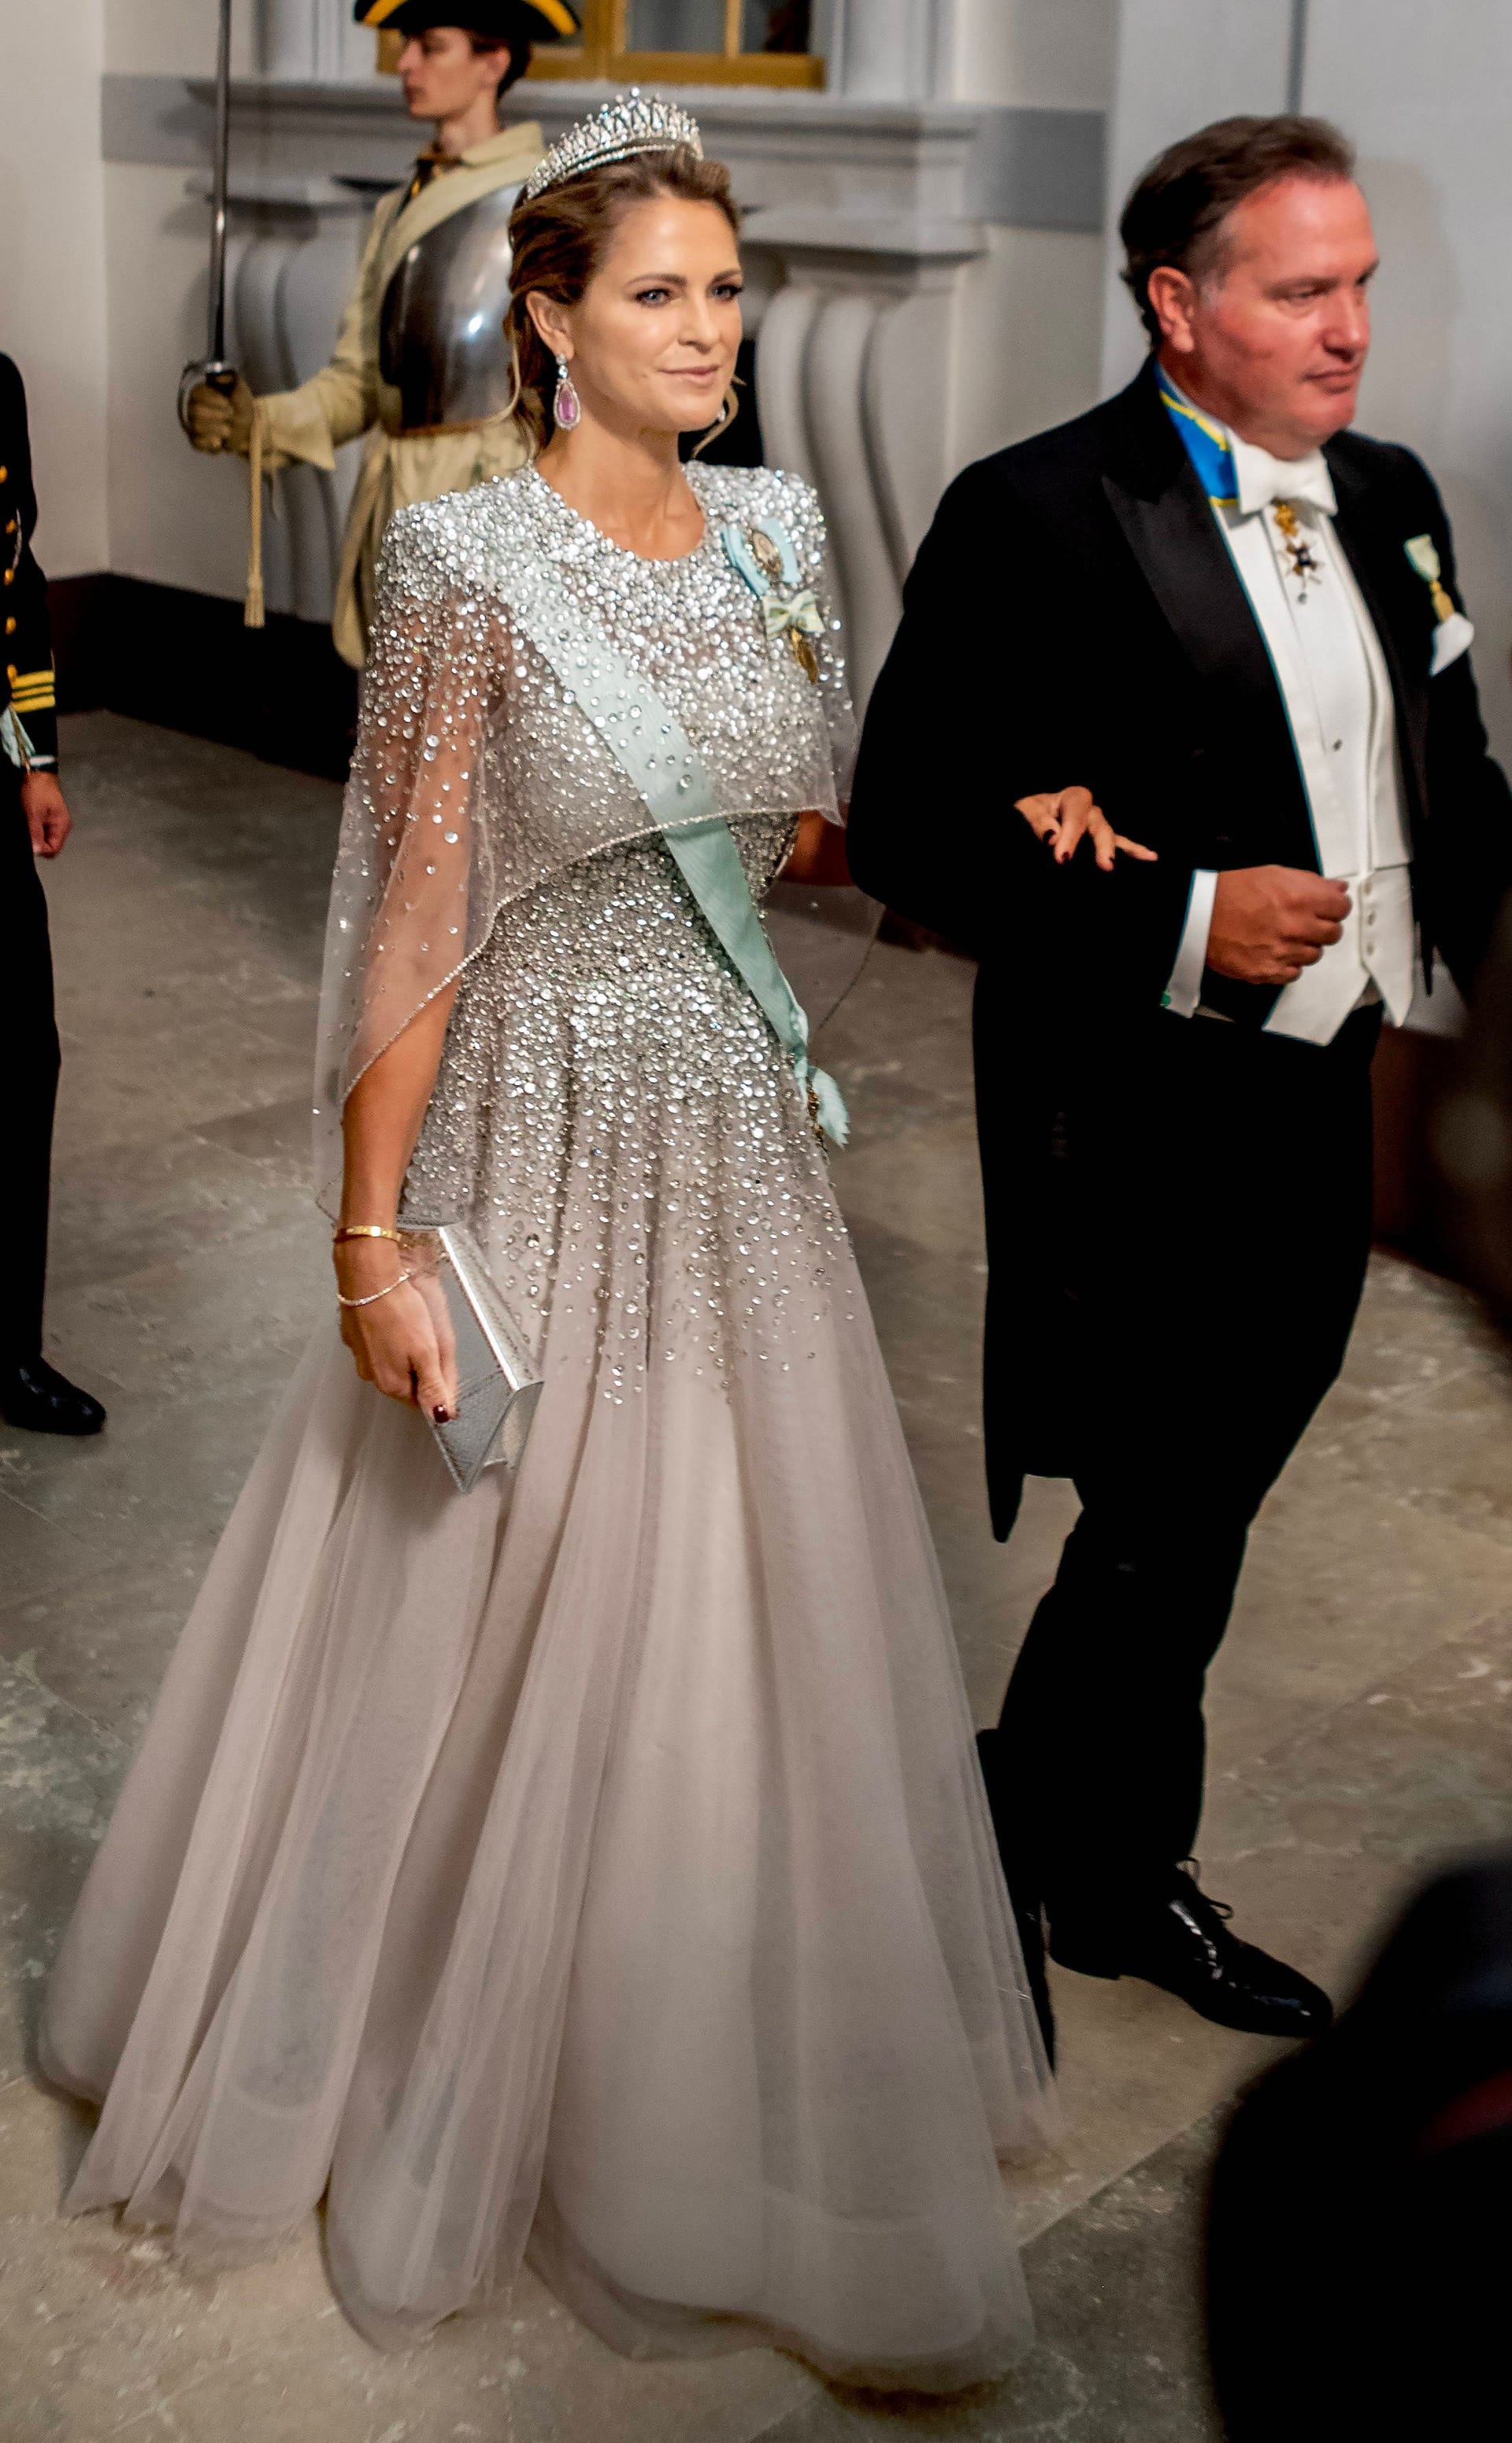 Prinzessin Madeleine beeindruckte in einem bodenlangen Kleid.